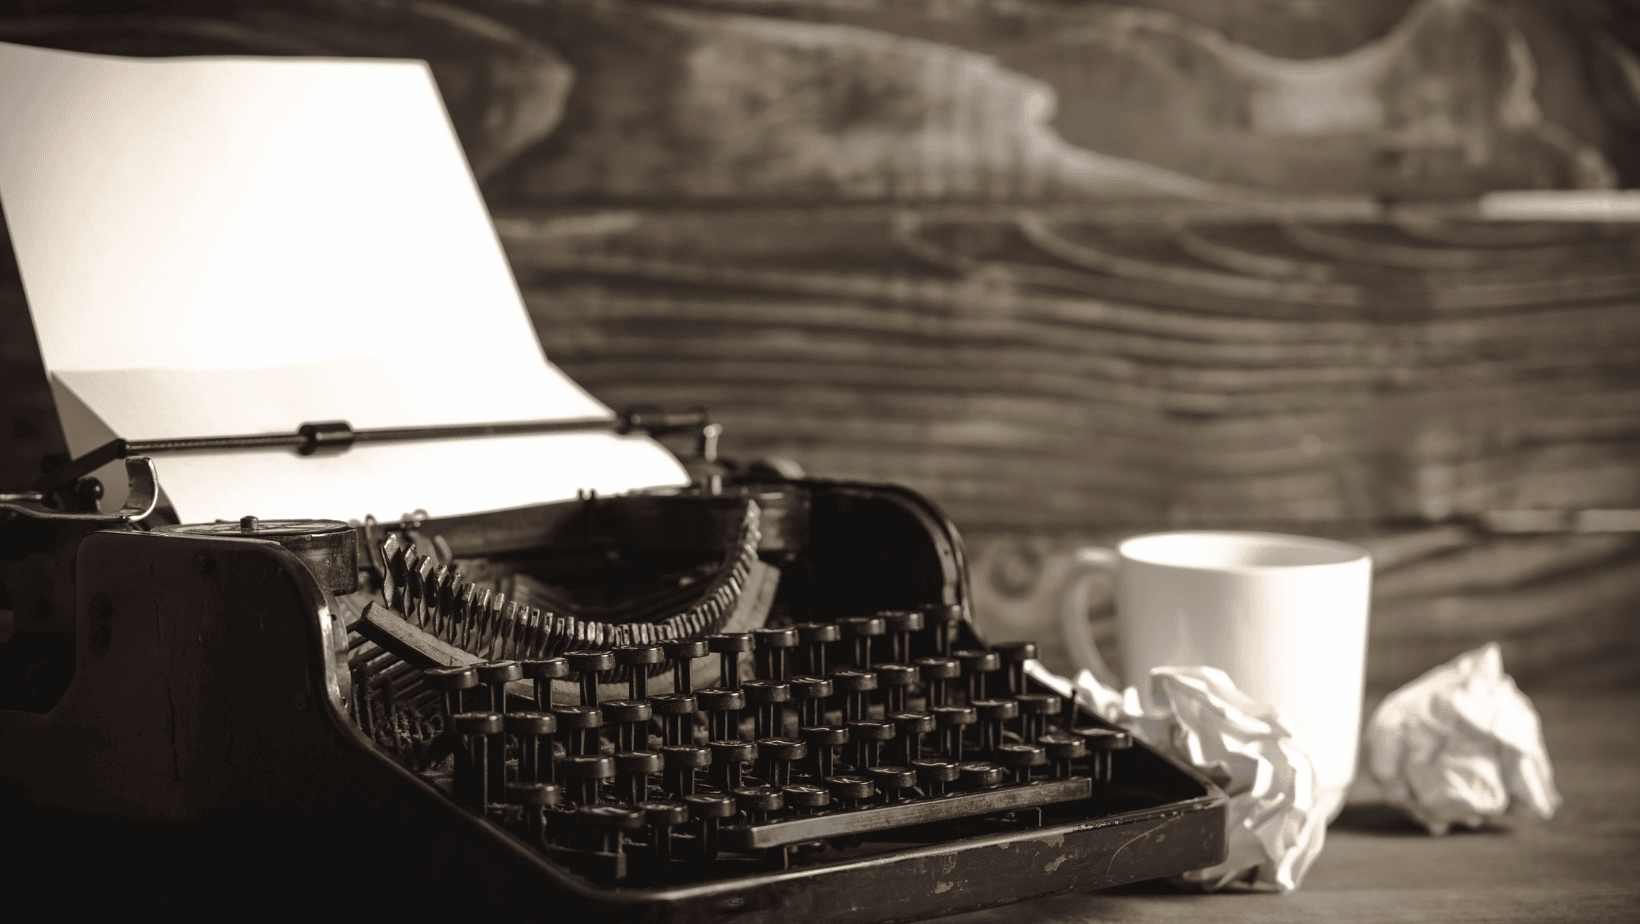 Stock photo of typewriter and mug on desk.